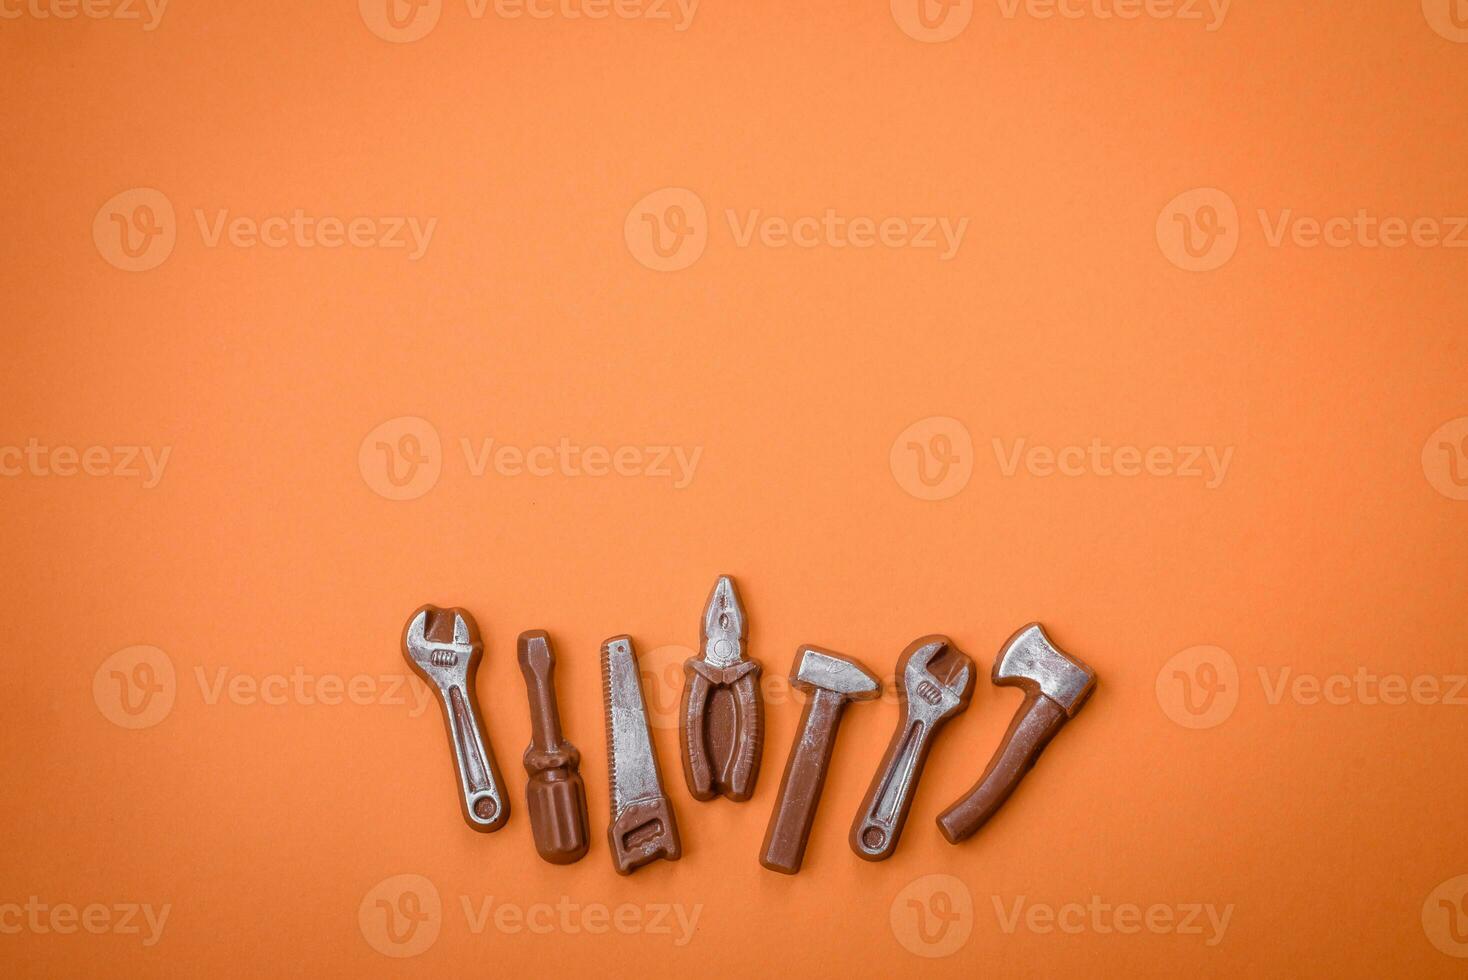 verktyg och inskriptioner symboliserar reparationer eller en garage och dess attribut på en enkel bakgrund foto